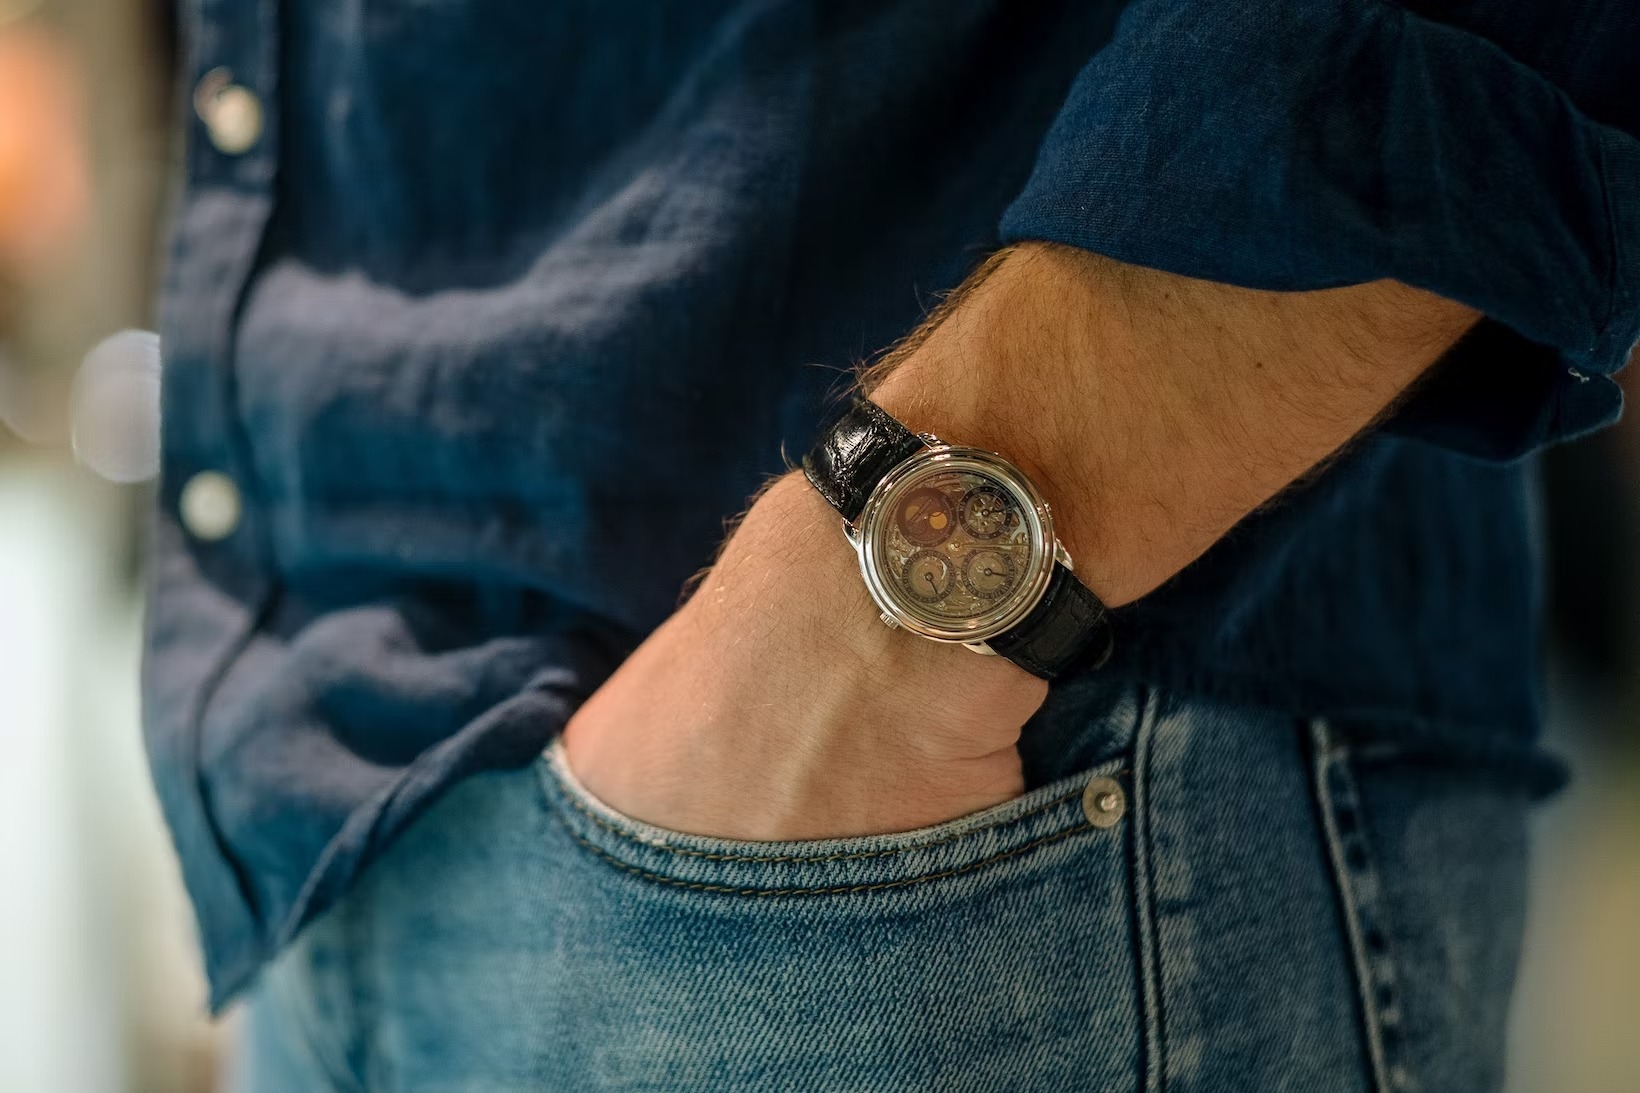 Tuyệt Chiêu “Chạy” Siêu Chính Xác Của Đồng Hồ Rolex: Superlative Chronometer Máy 3255 Day Date 40